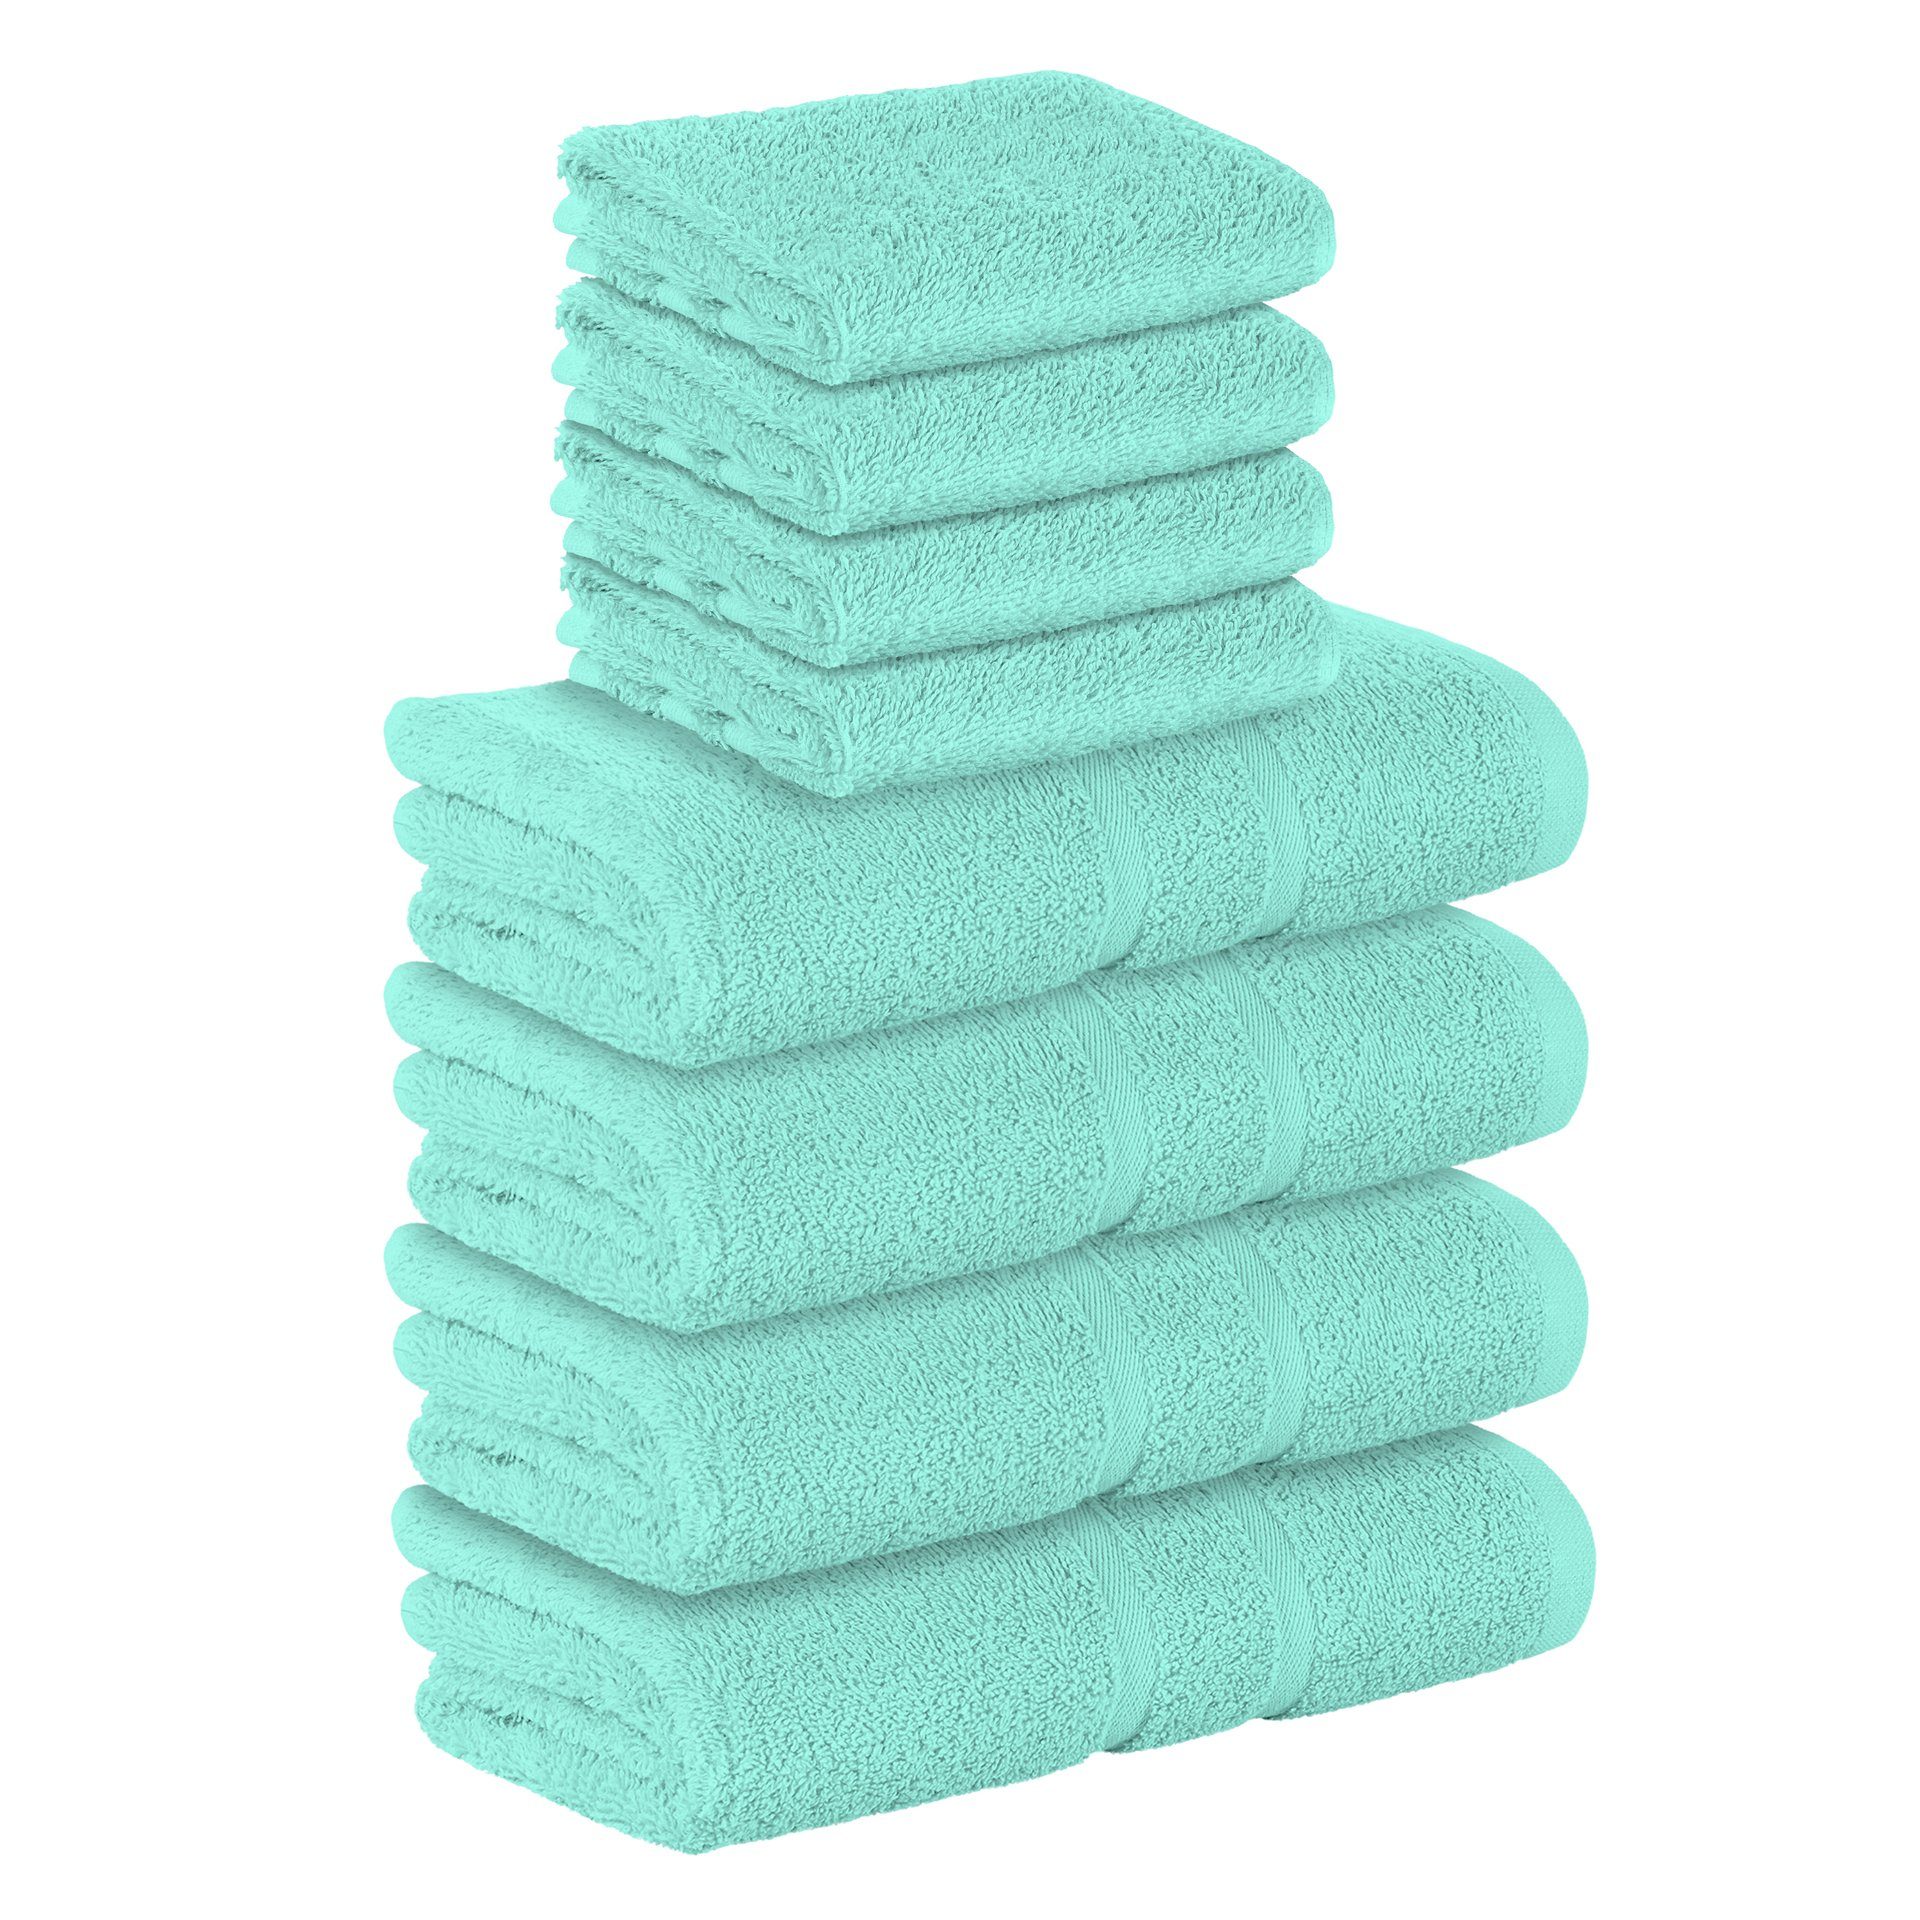 StickandShine Handtuch Set 4x Gästehandtuch 4x Handtücher als SET in verschiedenen Farben (8 Teilig) 100% Baumwolle 500 GSM Frottee 8er Handtuch Pack, 100% Baumwolle 500 GSM Mint